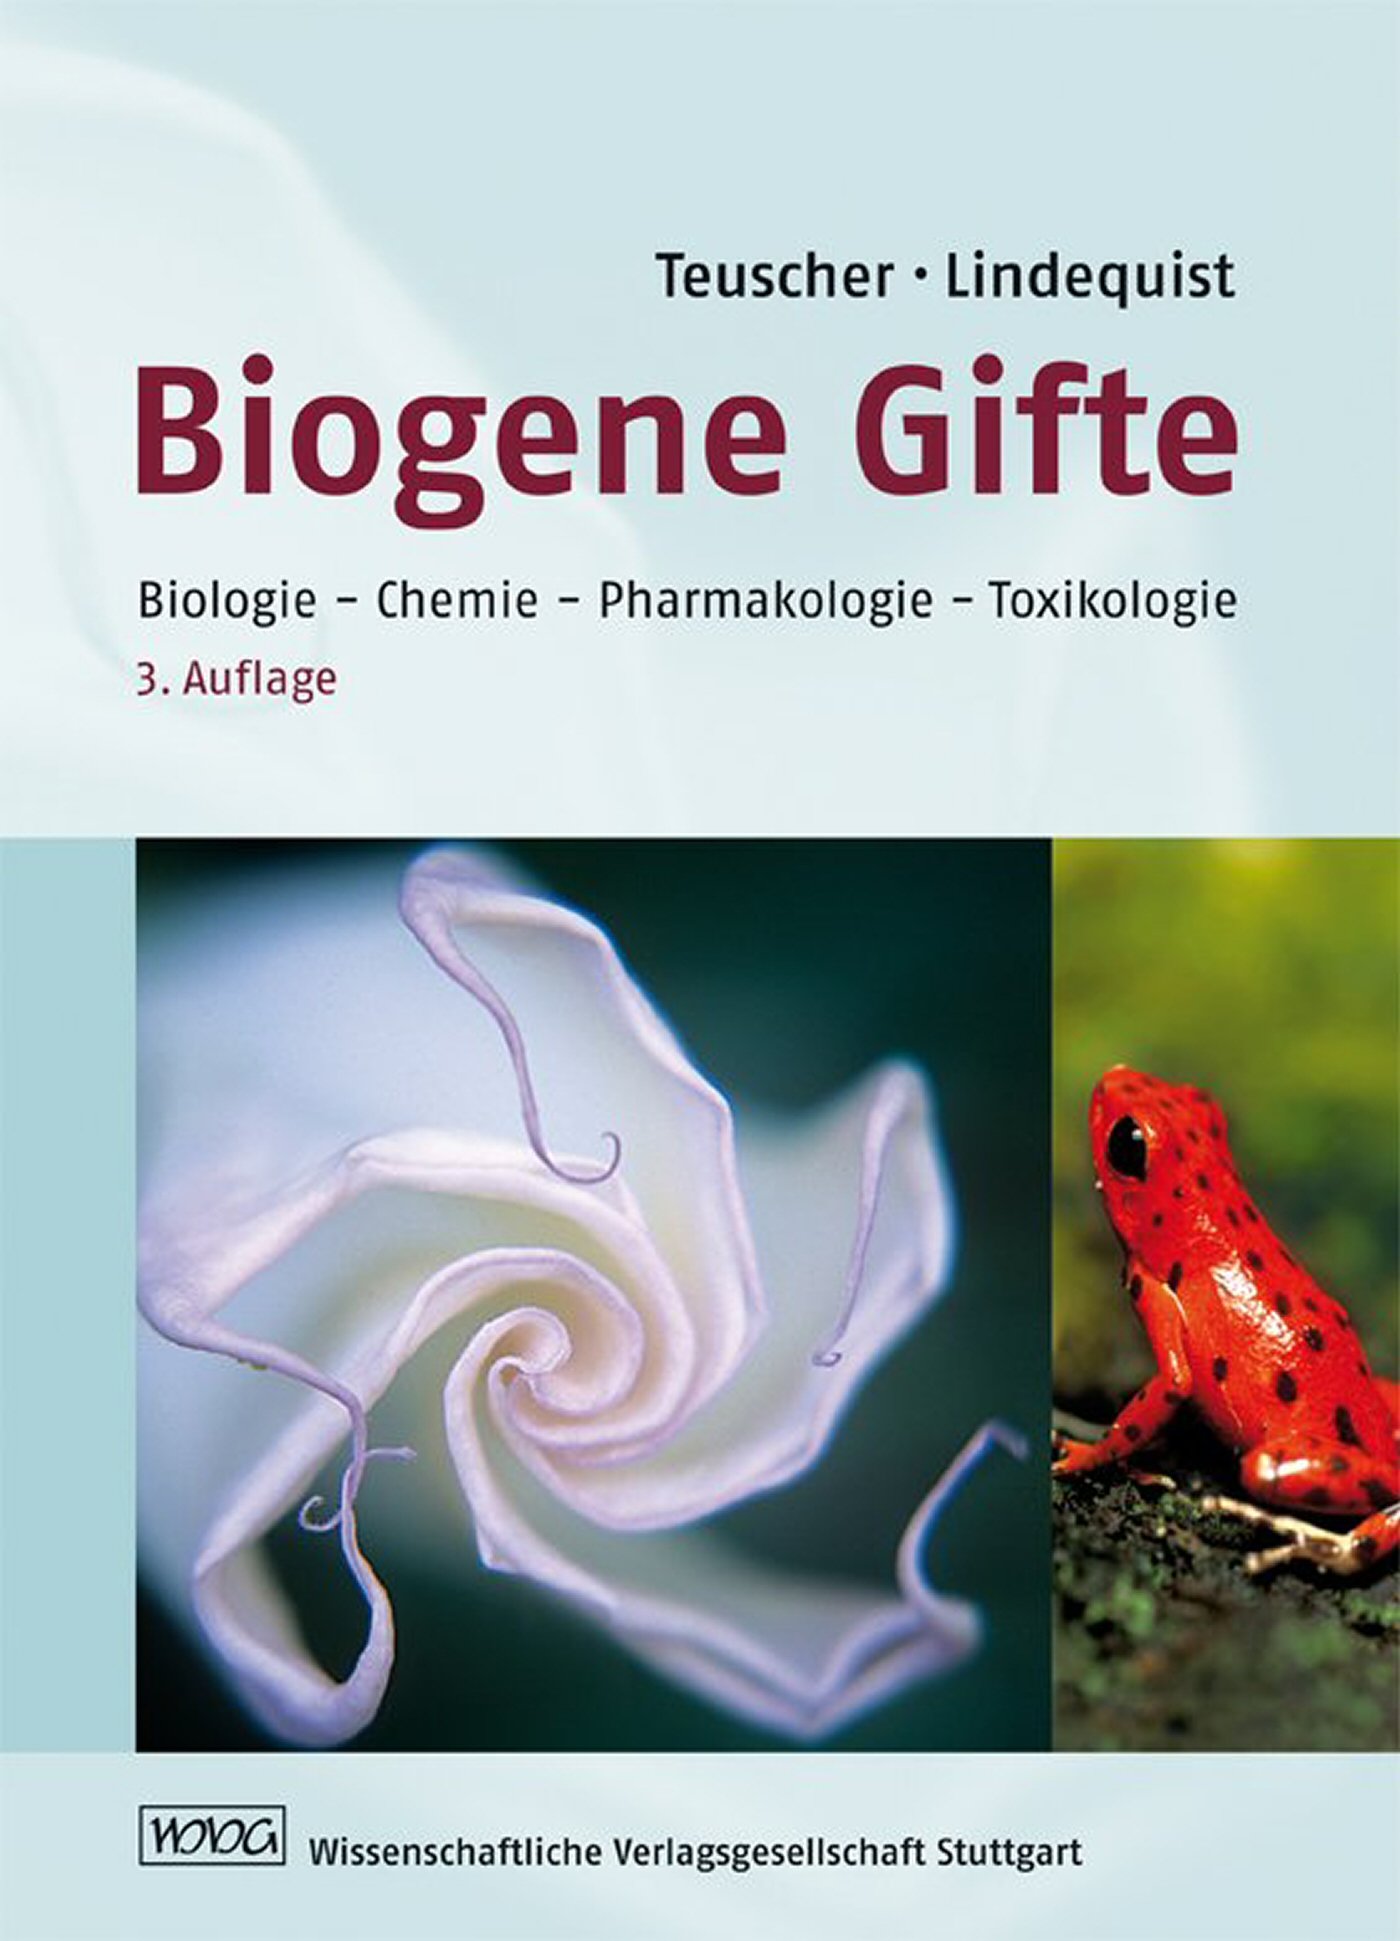 Biogene Gifte